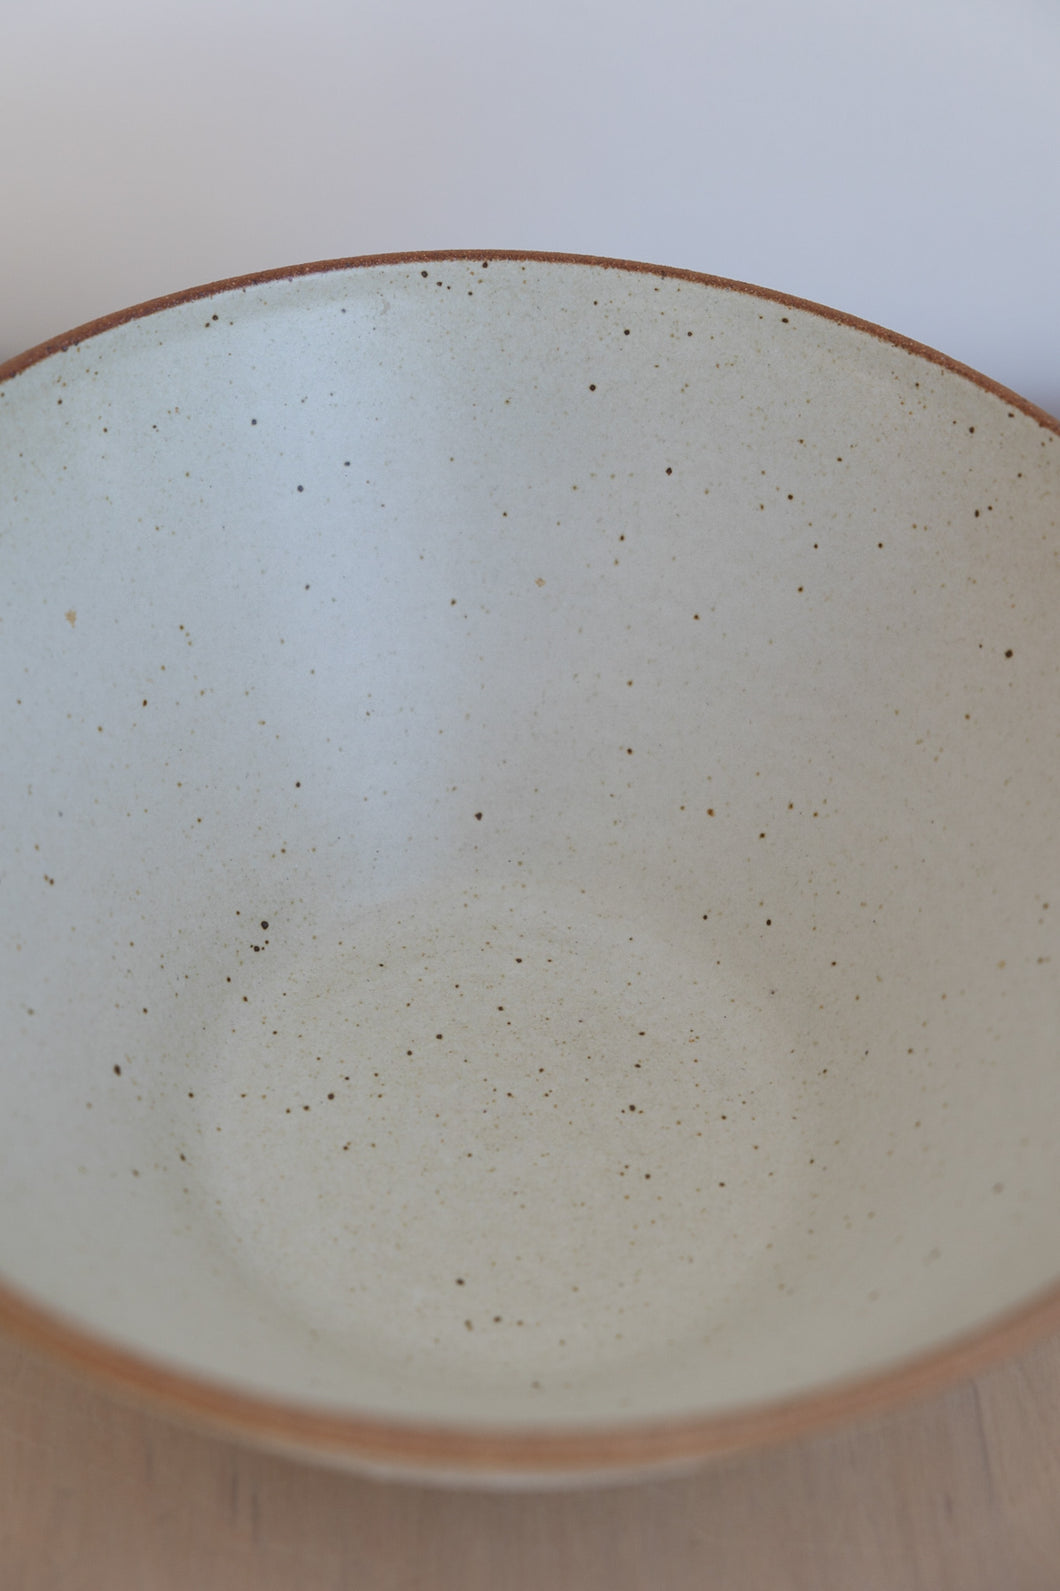 Ceramic Serving Bowl in Textured Cream